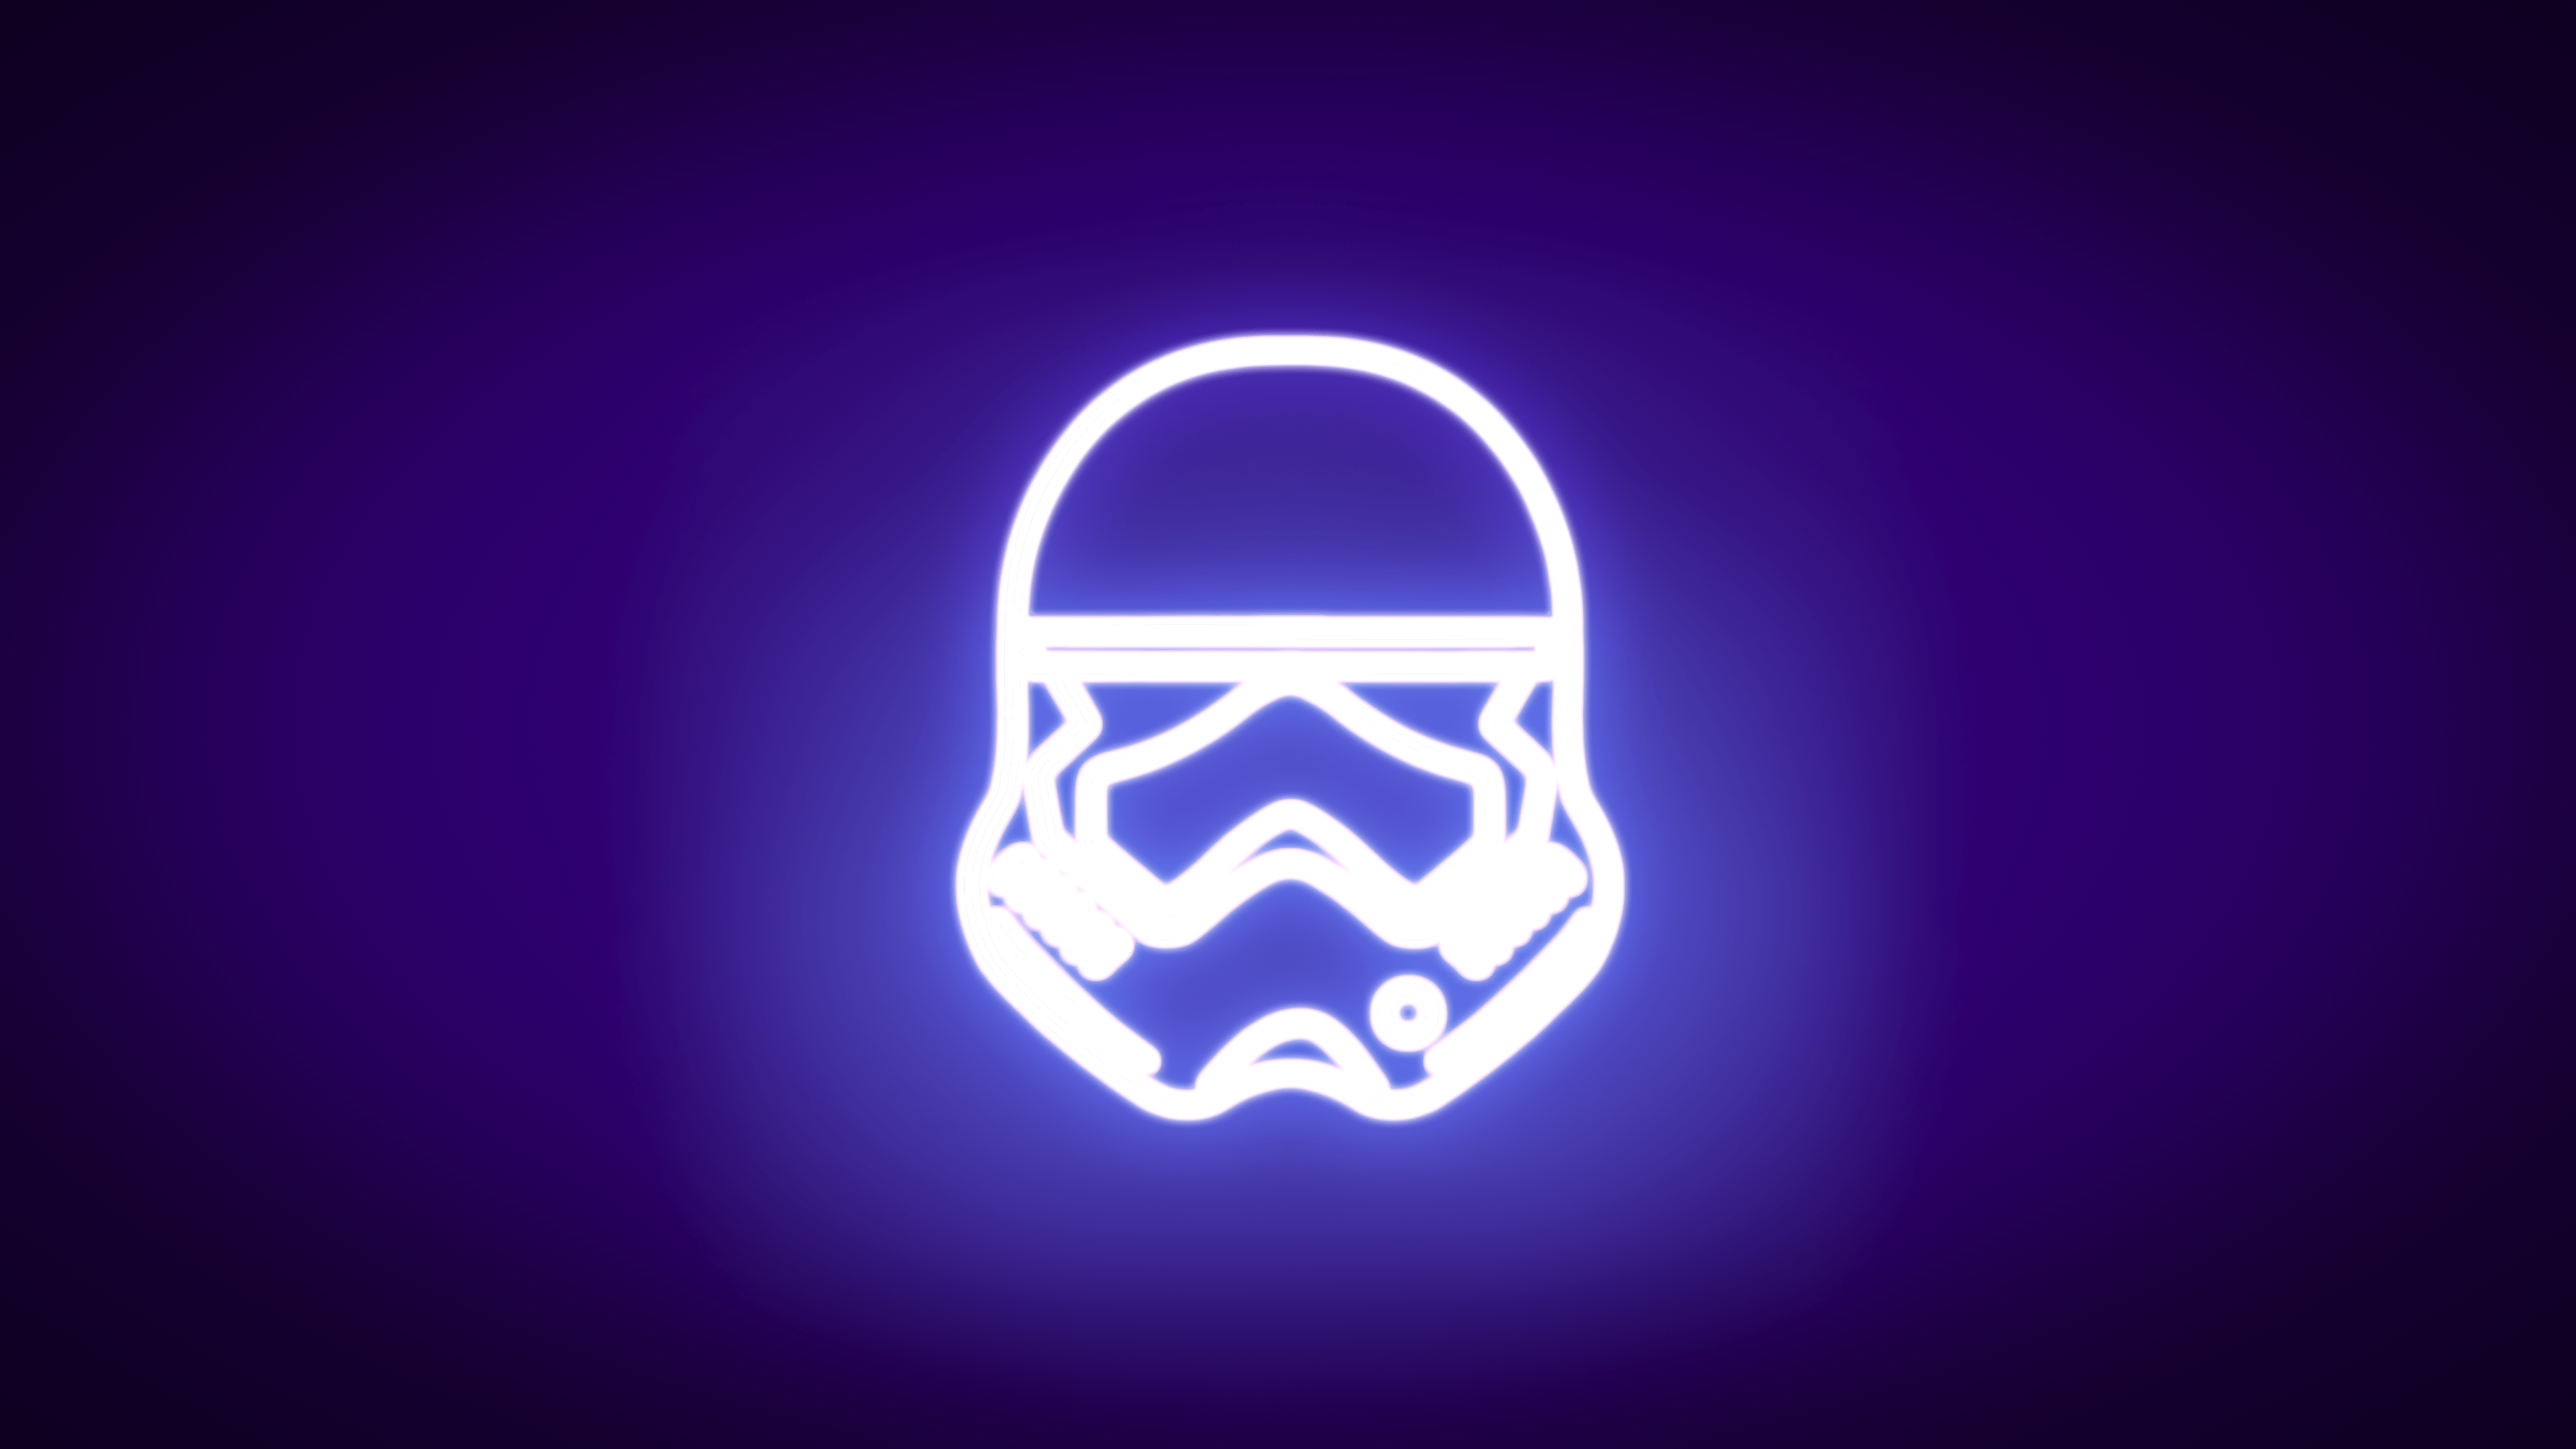 A neon trooper helmet on purple background - Star Wars